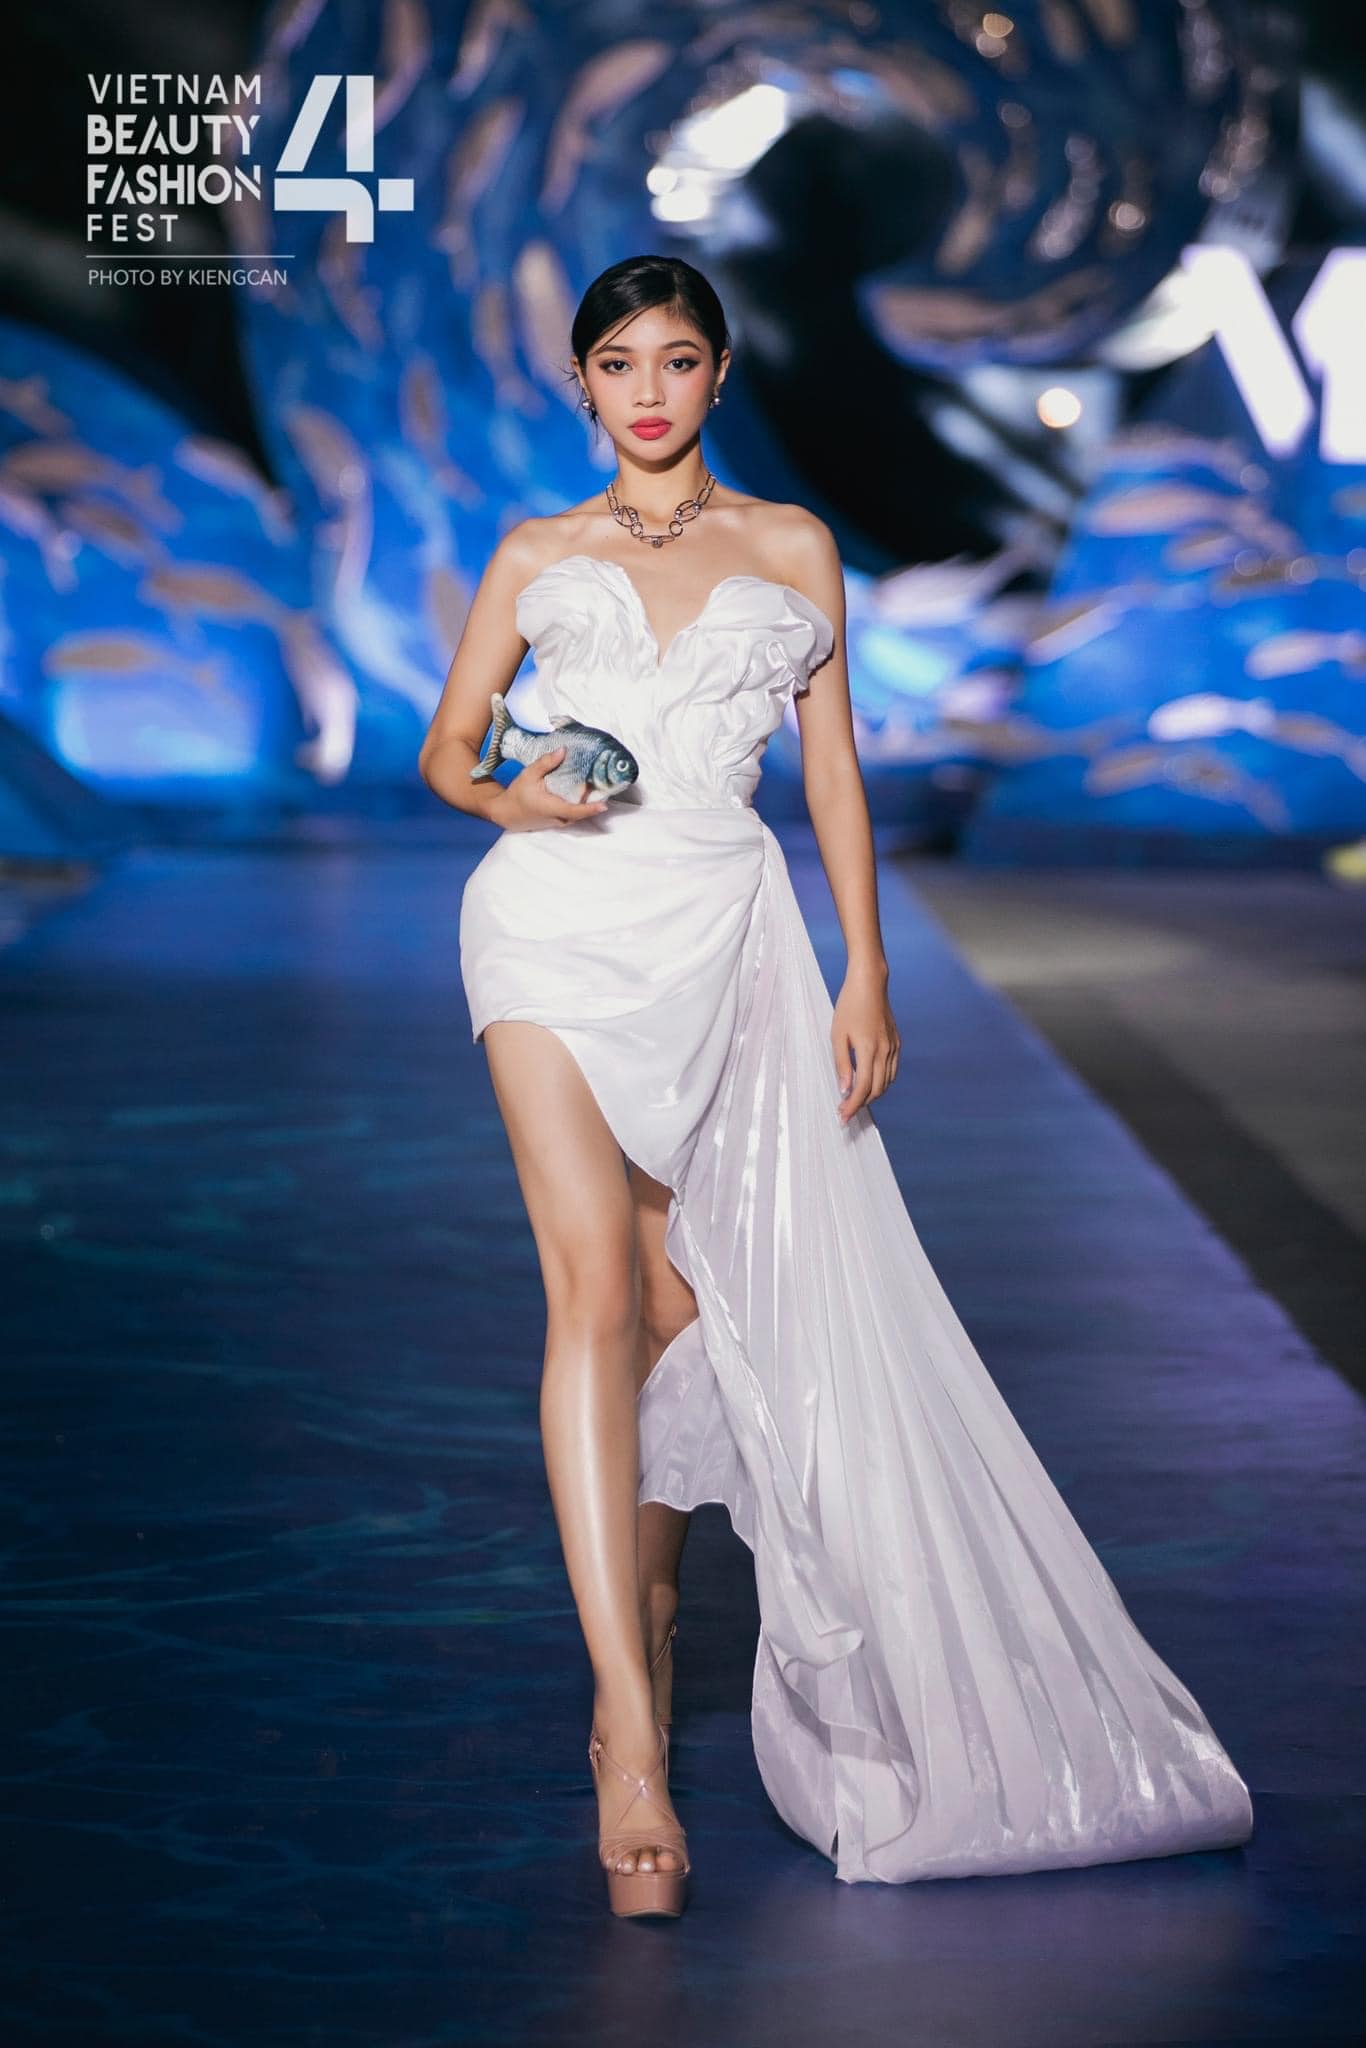 Tuổi thơ bất hạnh, nhiều biến cố của người đẹp Huỳnh Minh Kiên - Á hậu 2 Miss World Vietnam 2023 - ảnh 3